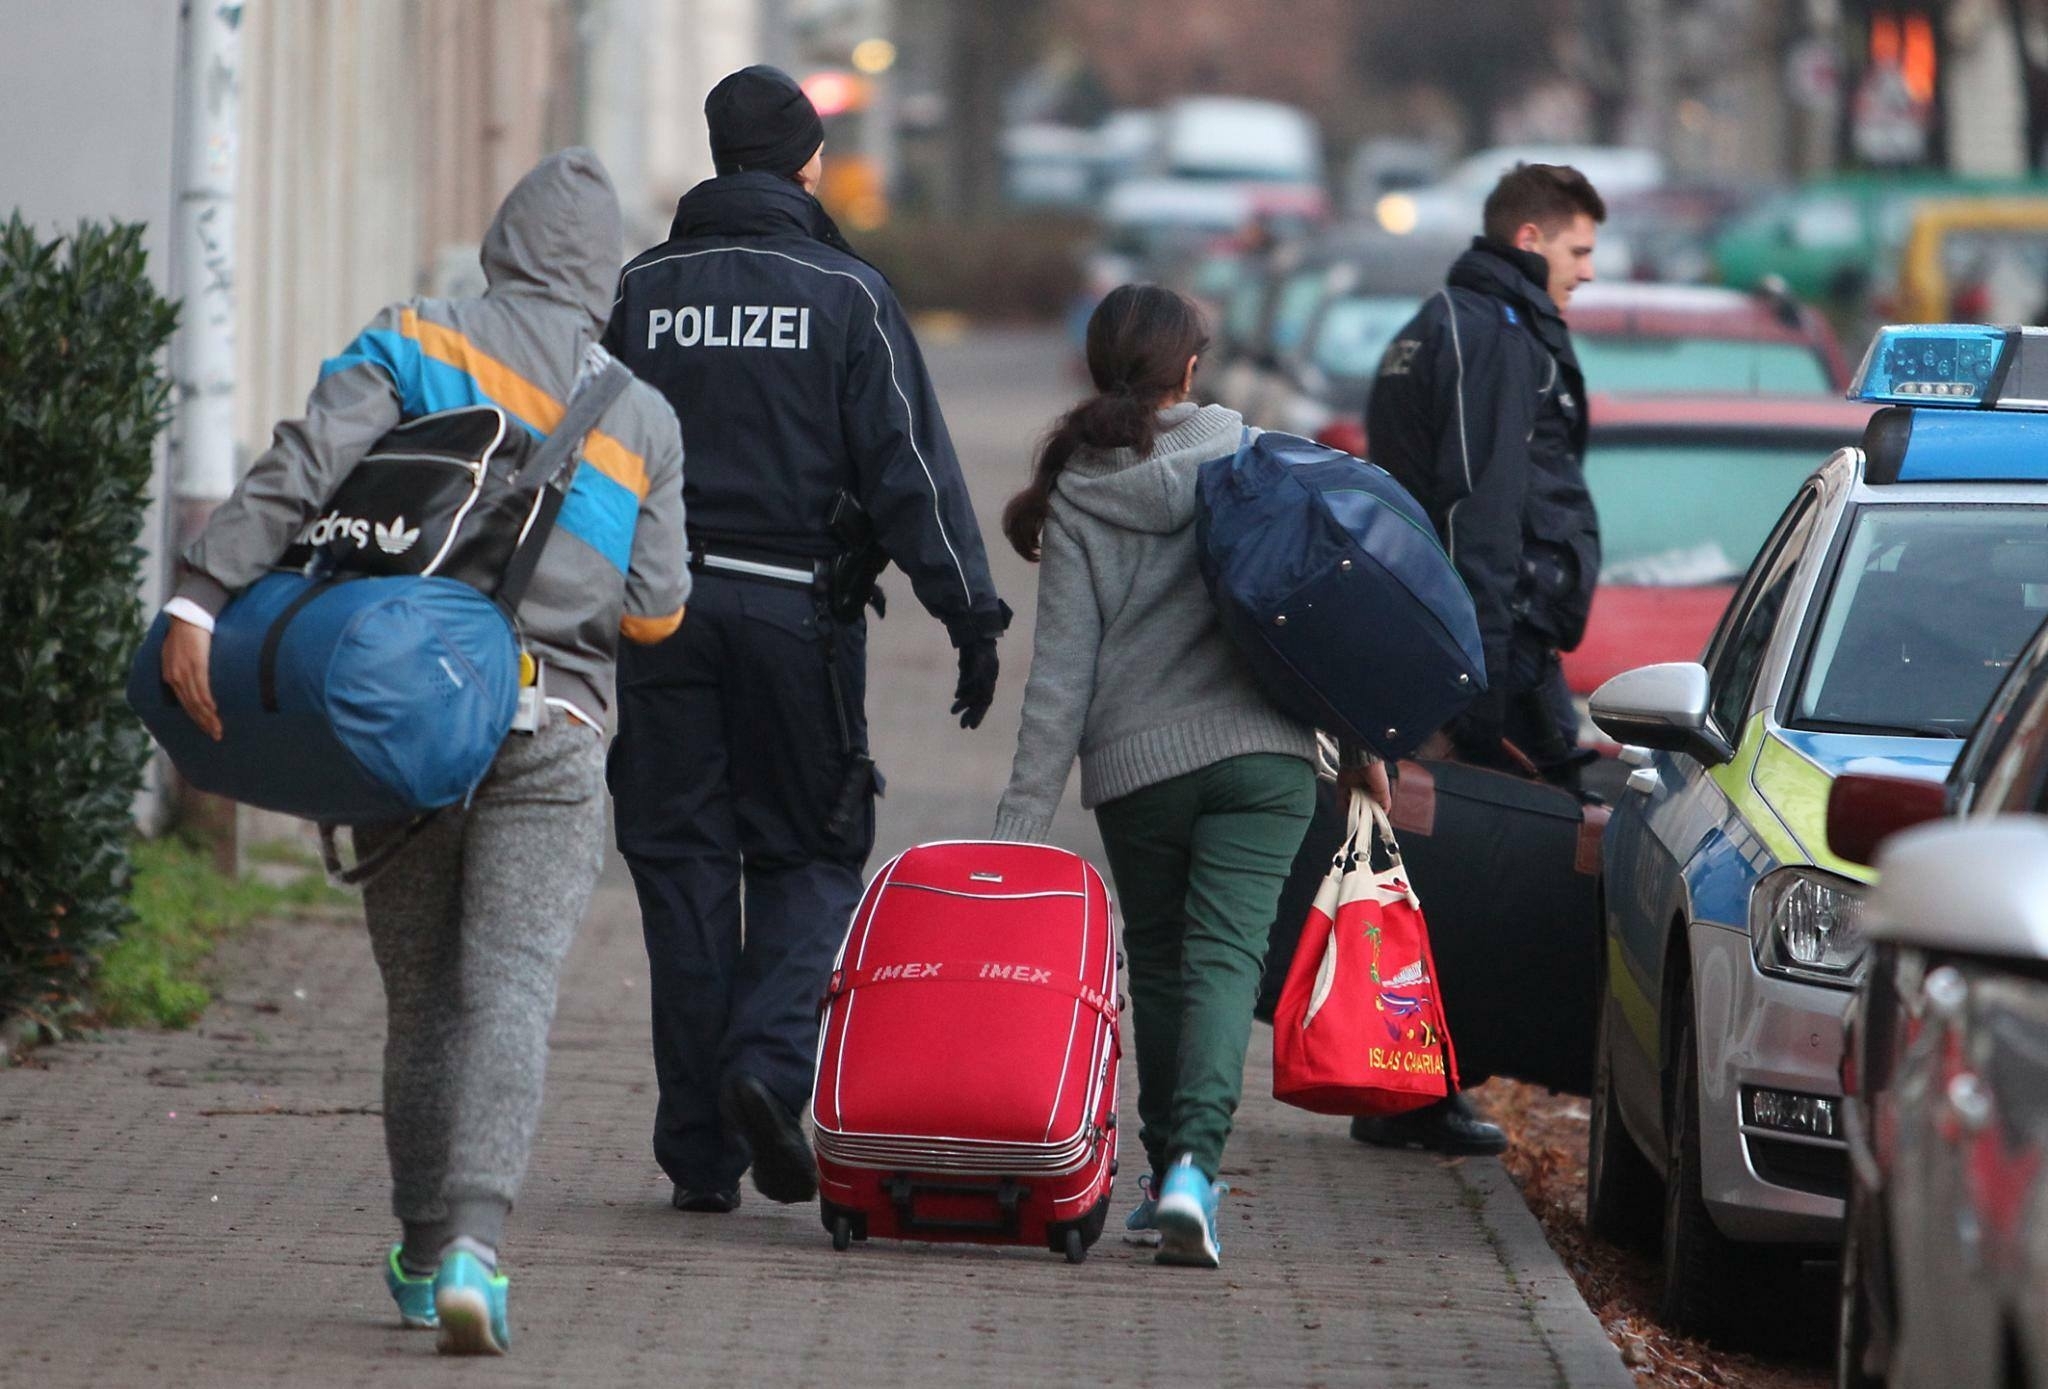 Германия может пересмотреть дела жертв "торговцев мигрантами"